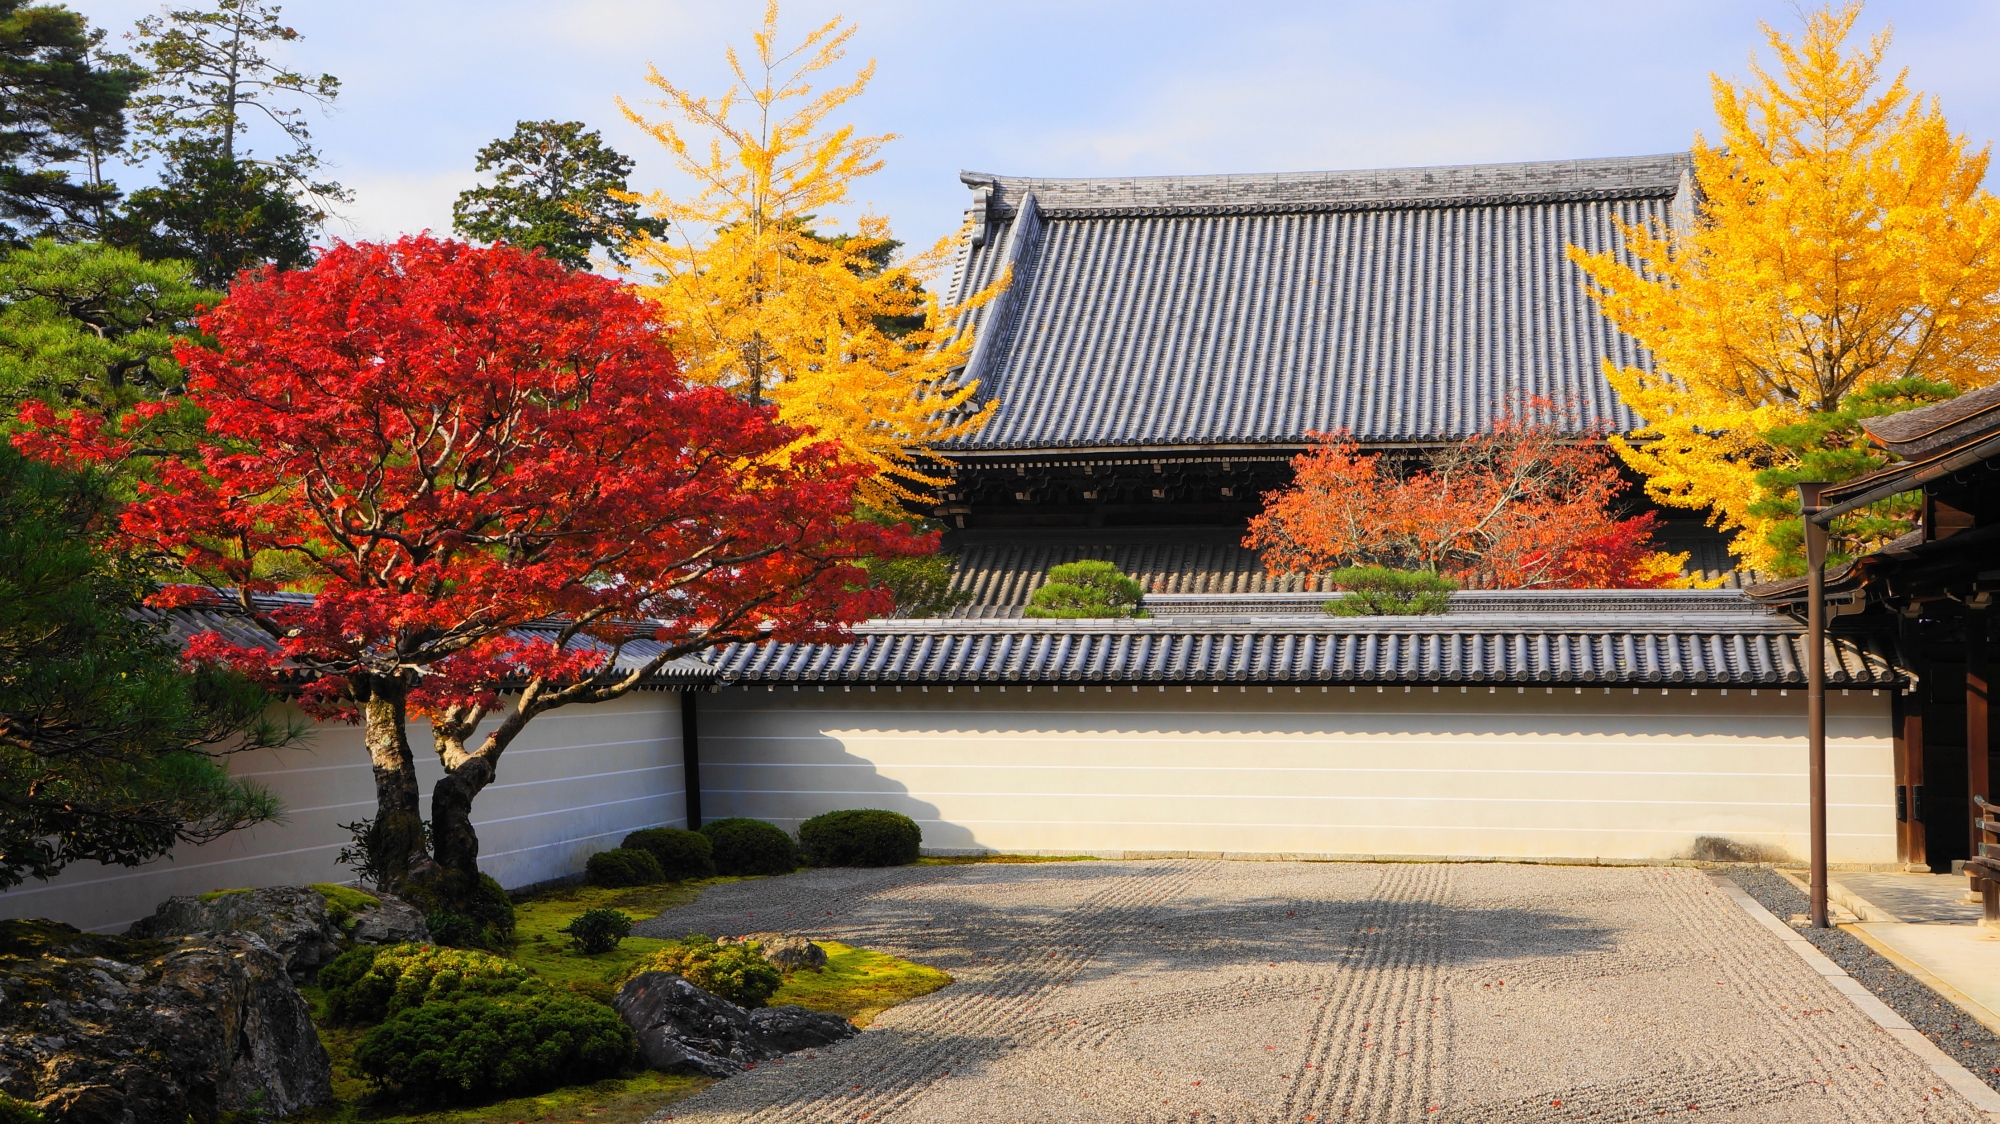 秋の南禅寺方丈庭園を彩る煌く紅葉と銀杏の赤色と黄色